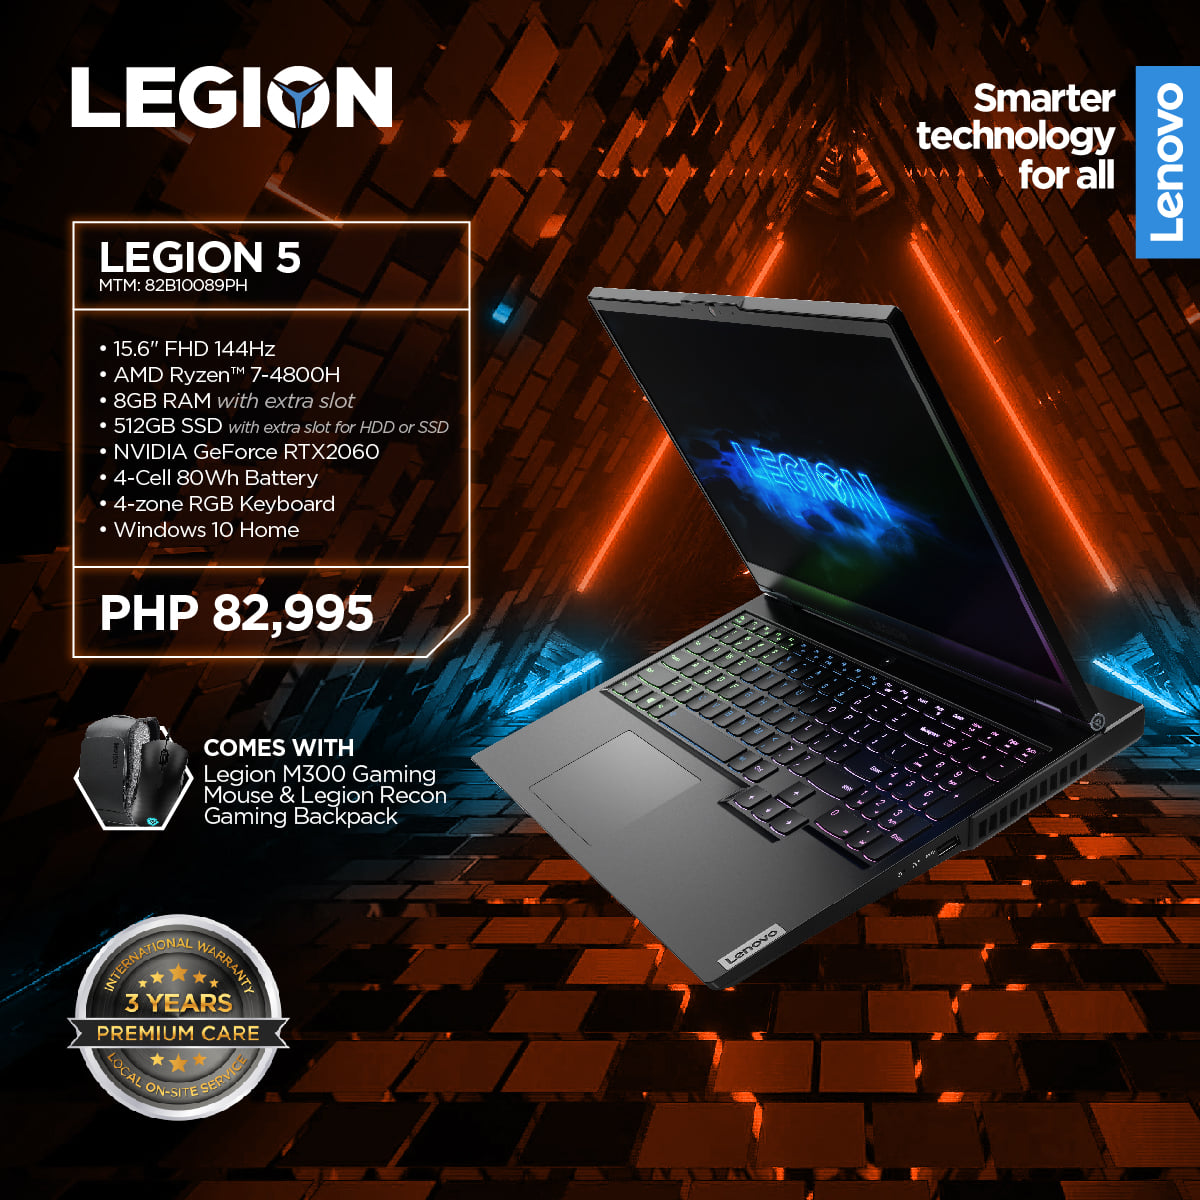 Lenovo Legion 5 AMD PH Price - Legion 5 Philippines Price